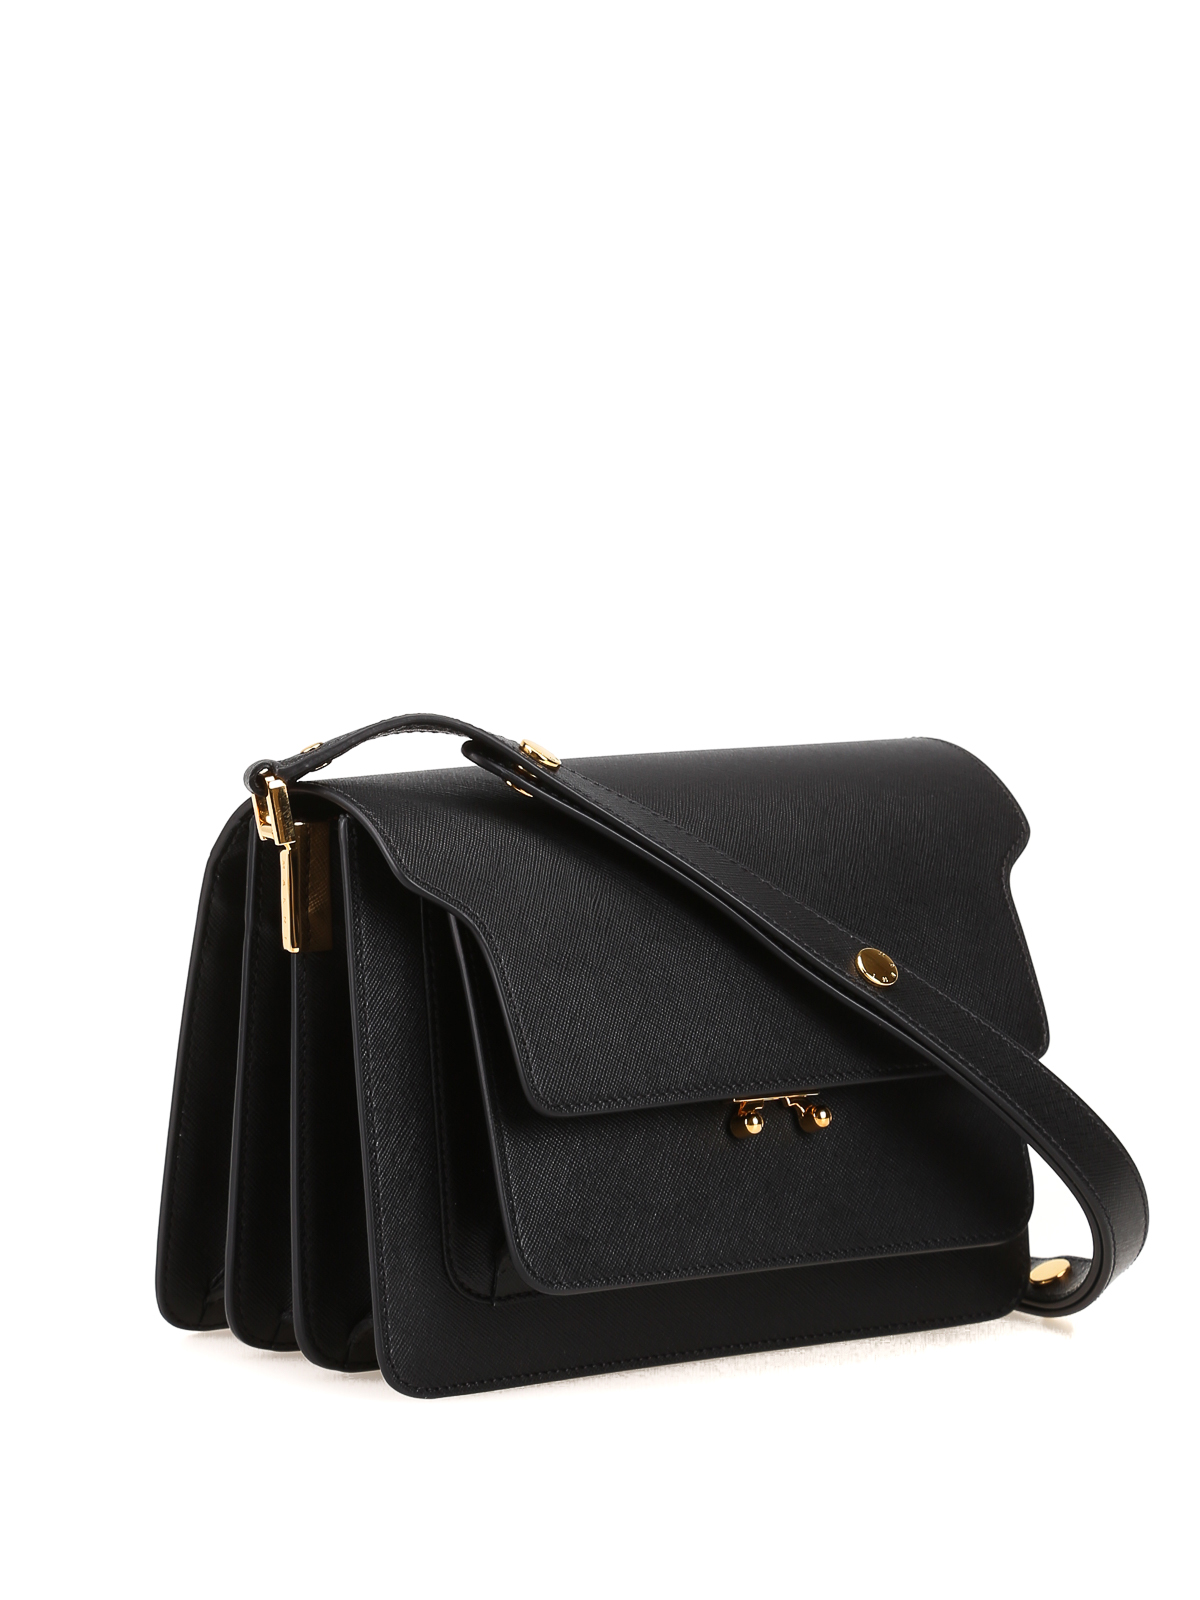 Marni - Black saffiano leather shoulder bag - shoulder bags ...